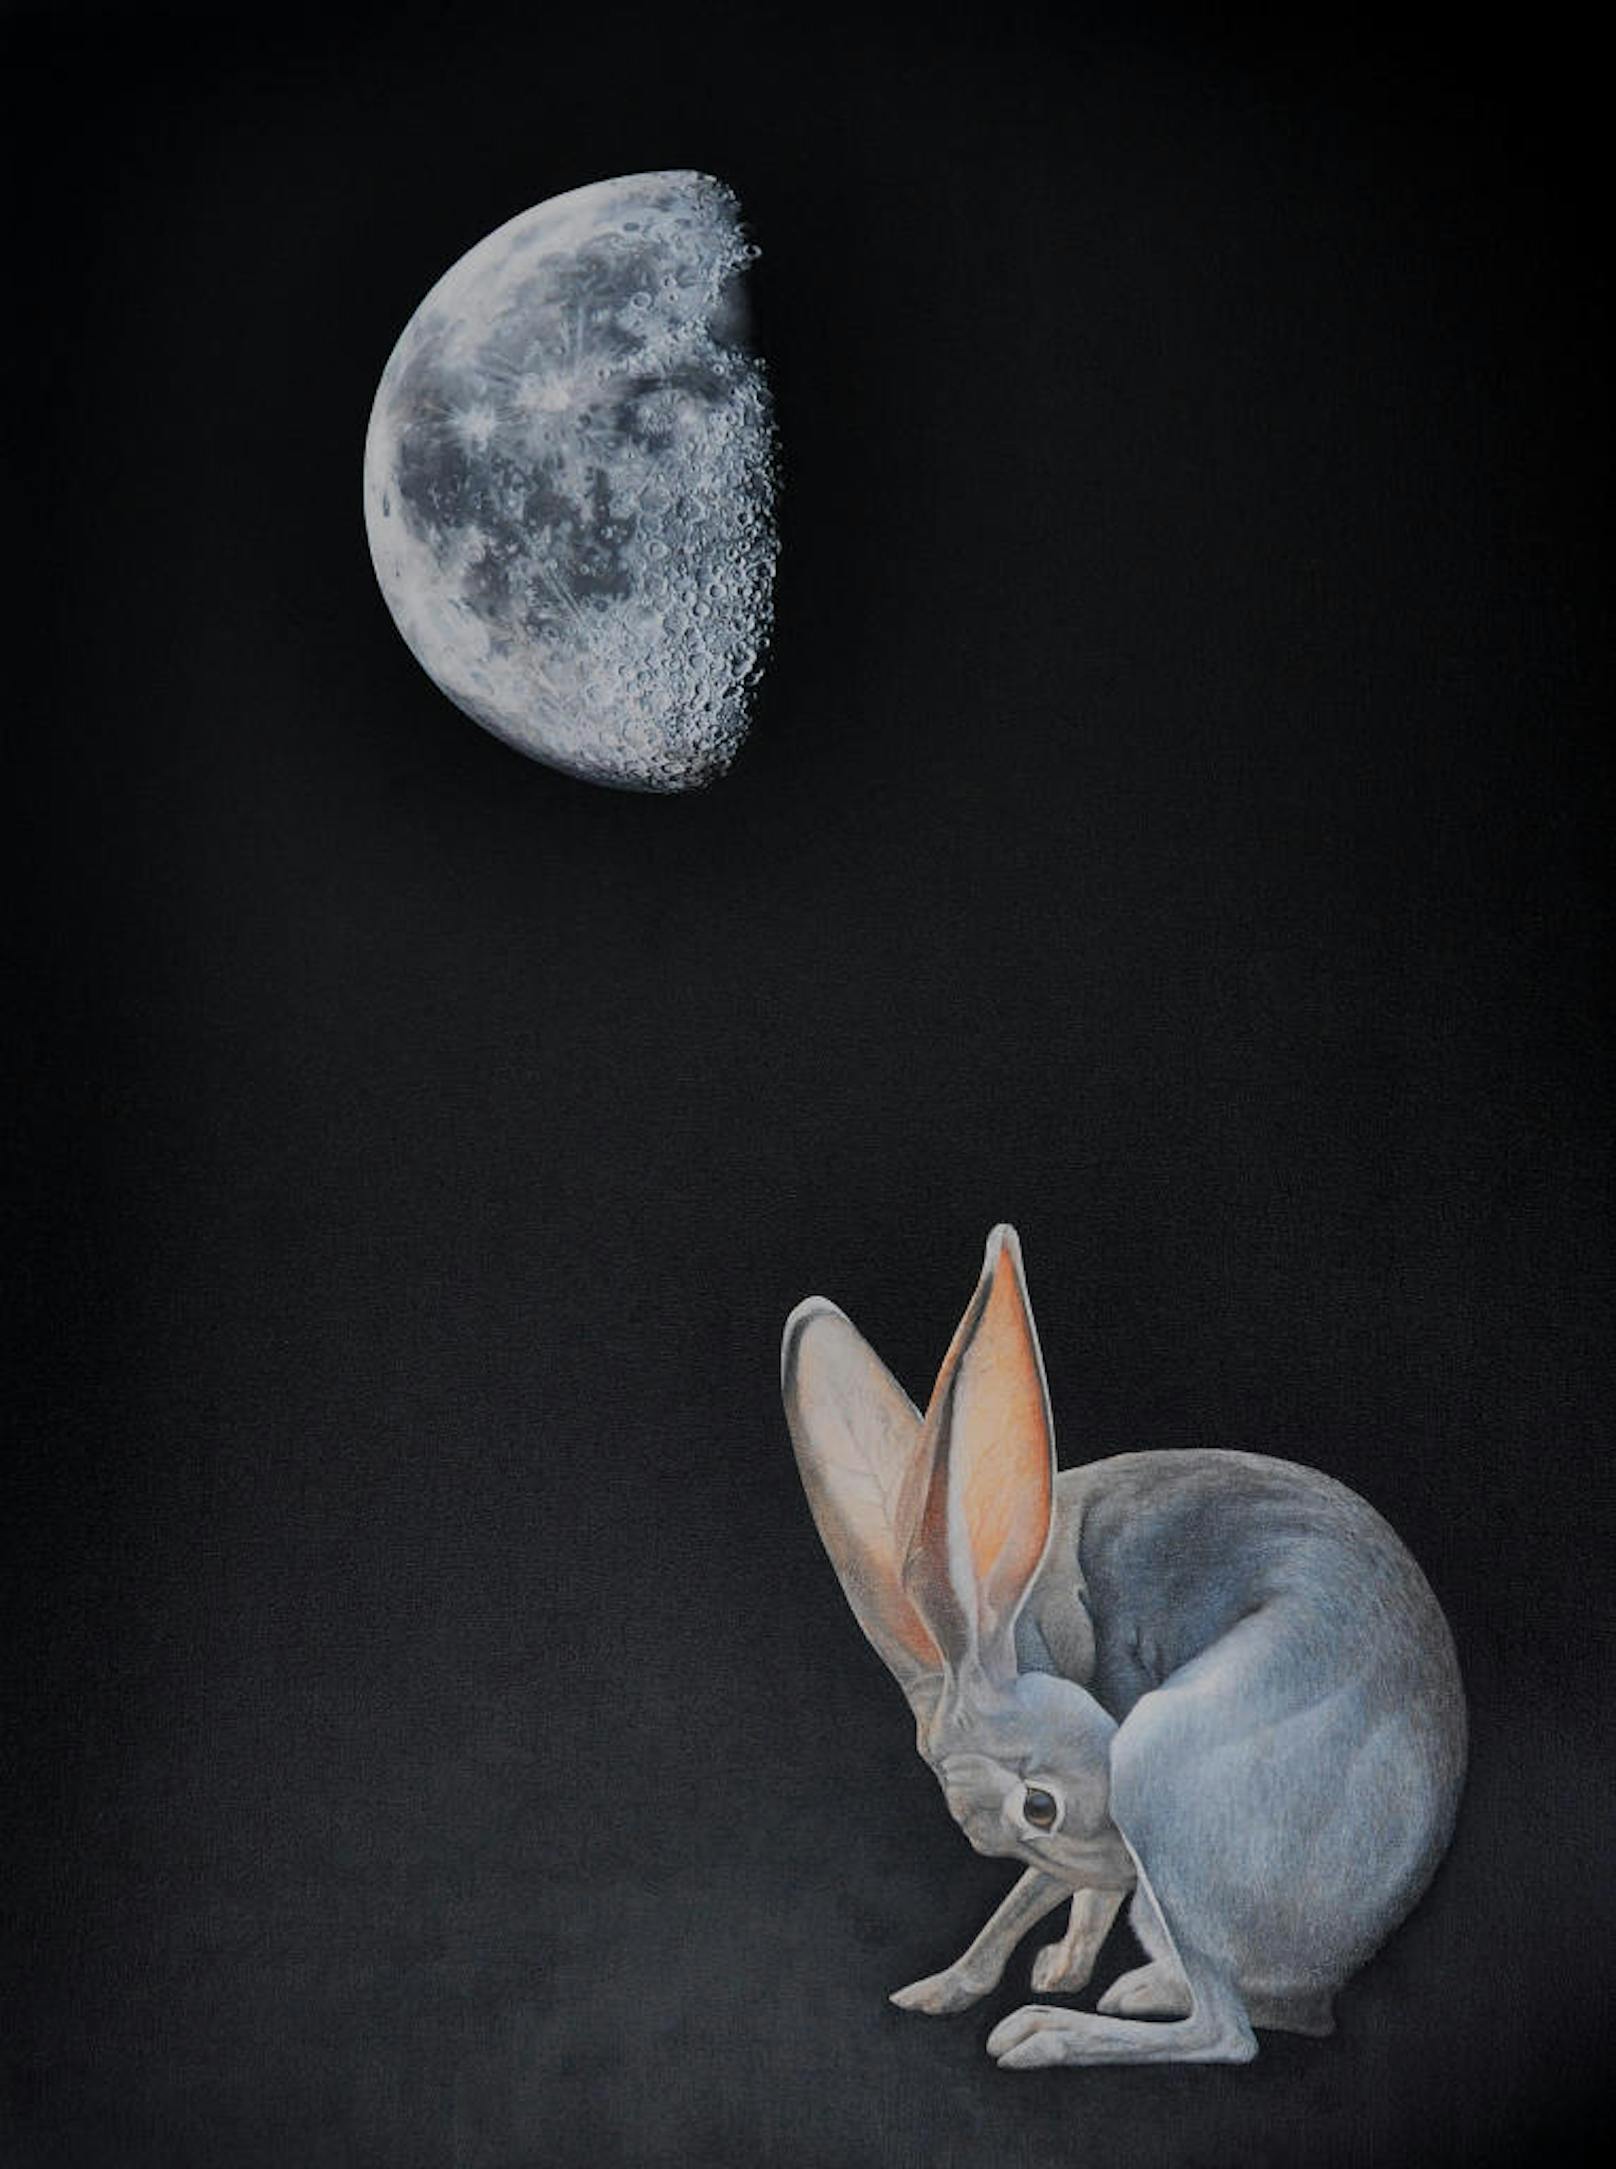 In ihrem Werk verknüpft die Künstlerin auch Wissenschaft mit Mythologie, so wie bei dem Bild "Lunar Hare", das auf die chinesische Fabel vom Hasen im Mond verweist. (c) Dona Jalufka